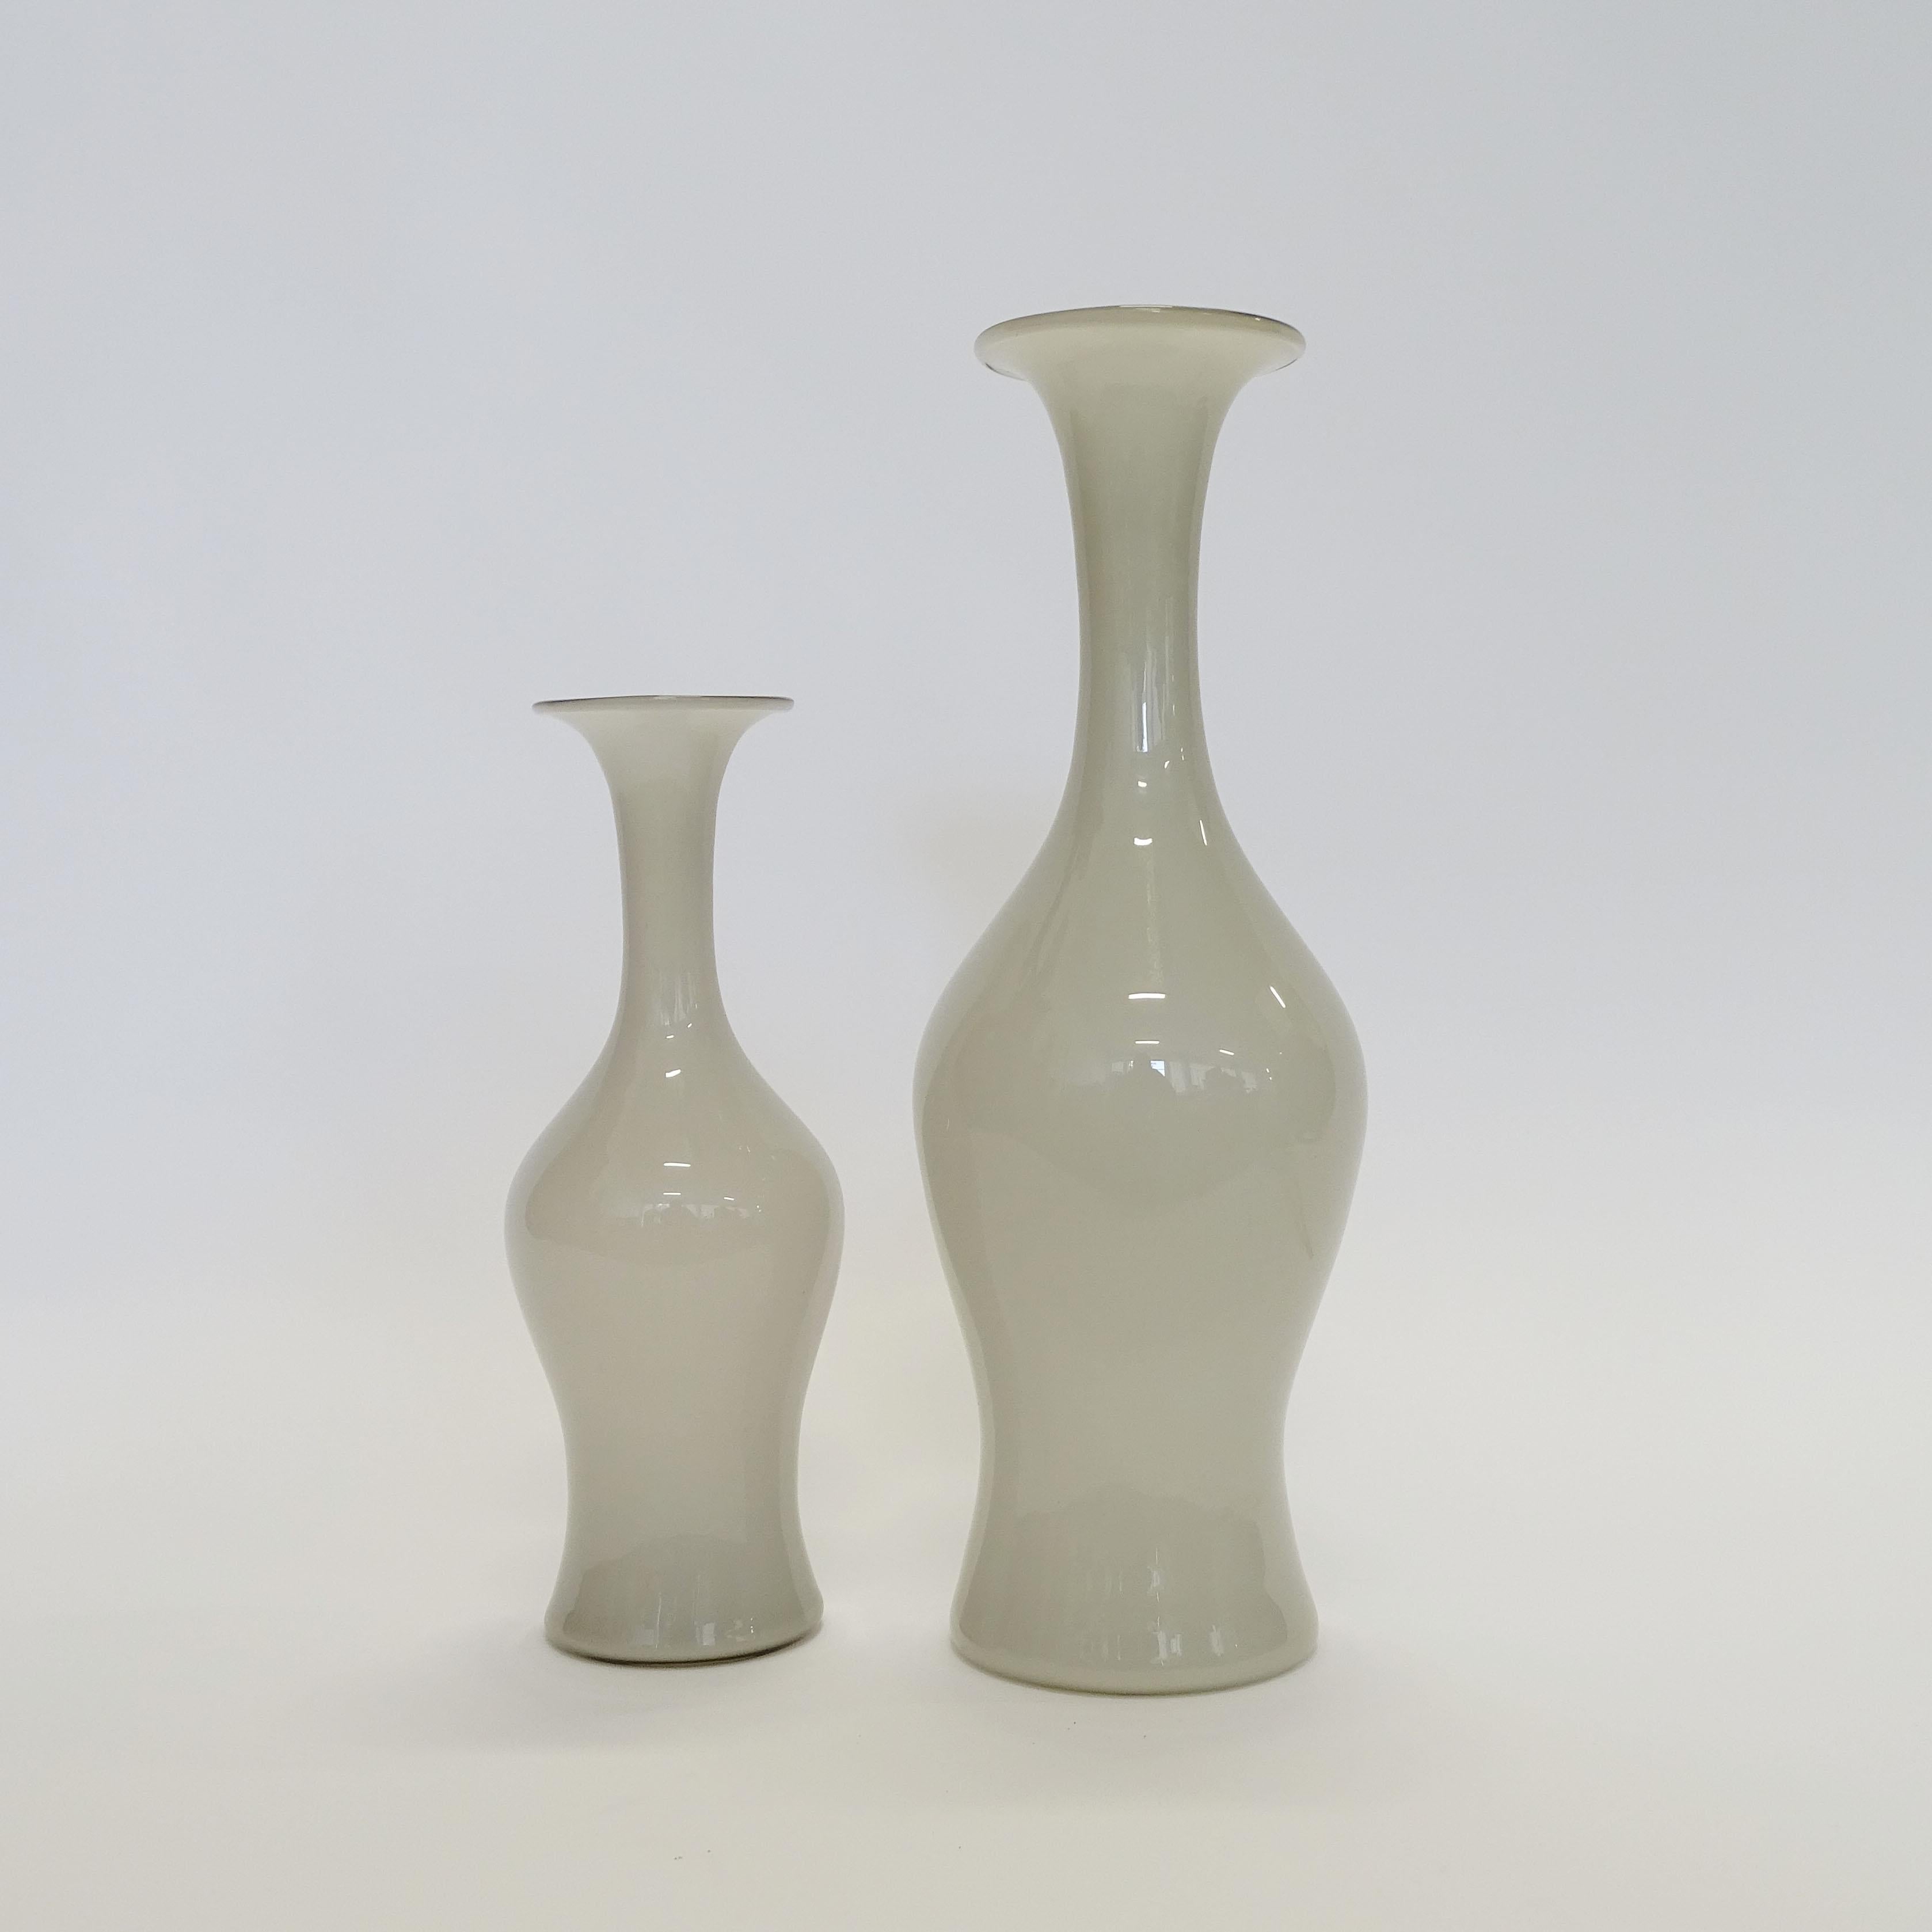 Vase monumental Paolo Venini modèle 3556  pour Venini en verre Opalino gris clair.
Le second vase, plus petit, mesure 13 cm de diamètre et 38 cm de hauteur.
Les deux vases portent le Label Venini et sont gravés à l'acide Venini Murano Italia.
